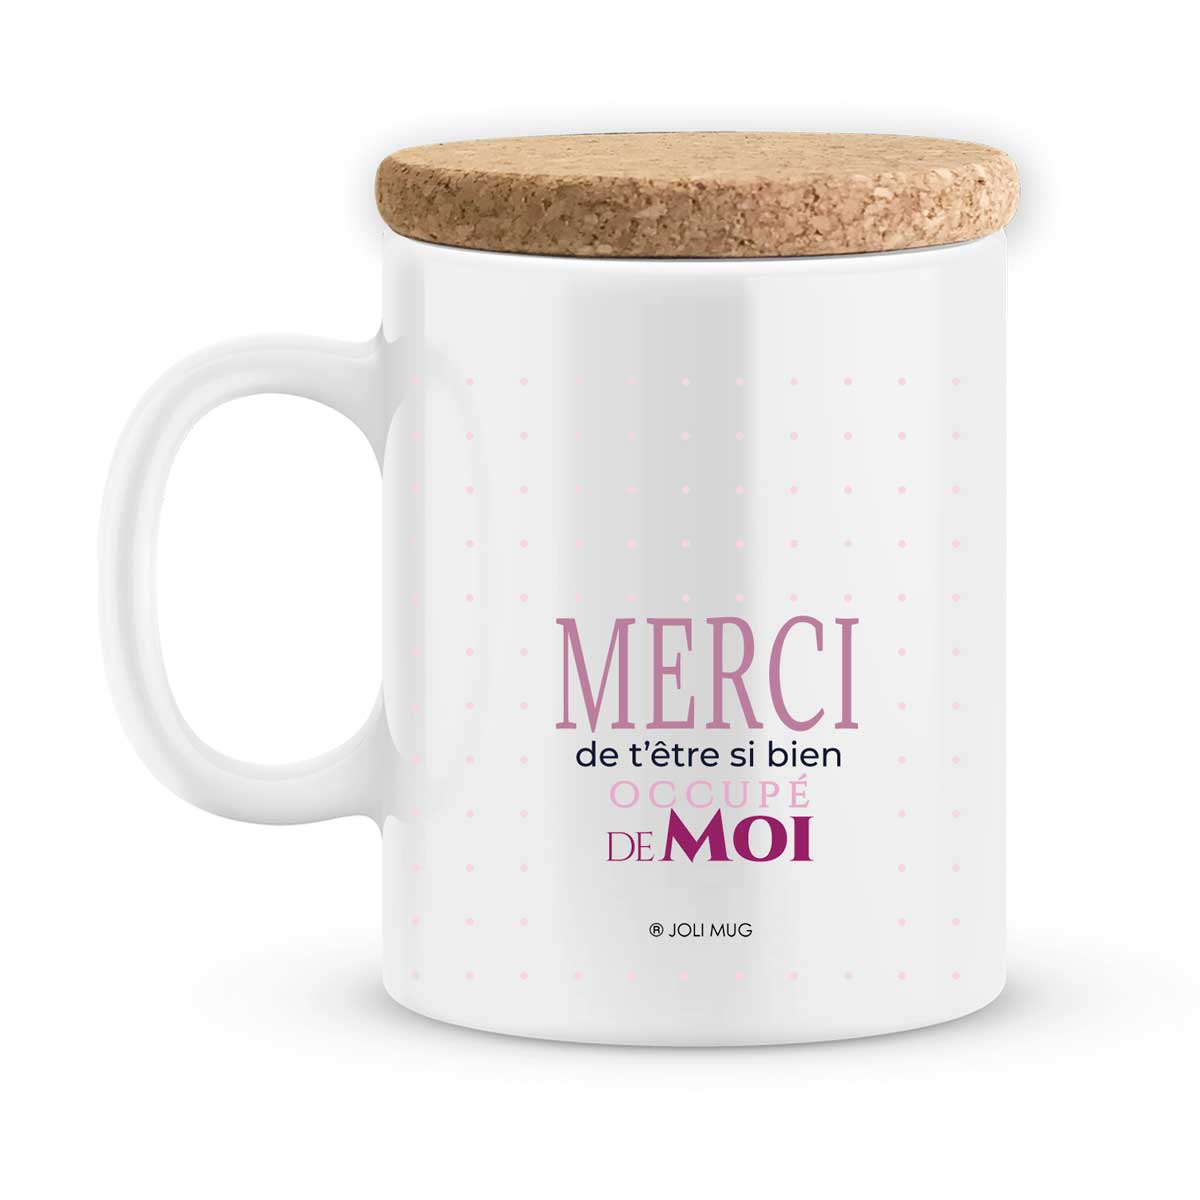 Mug Super Nounou personnalisable avec Texte ou Prénom · Cadeau personnalisé  nourrice ou assistante maternelle